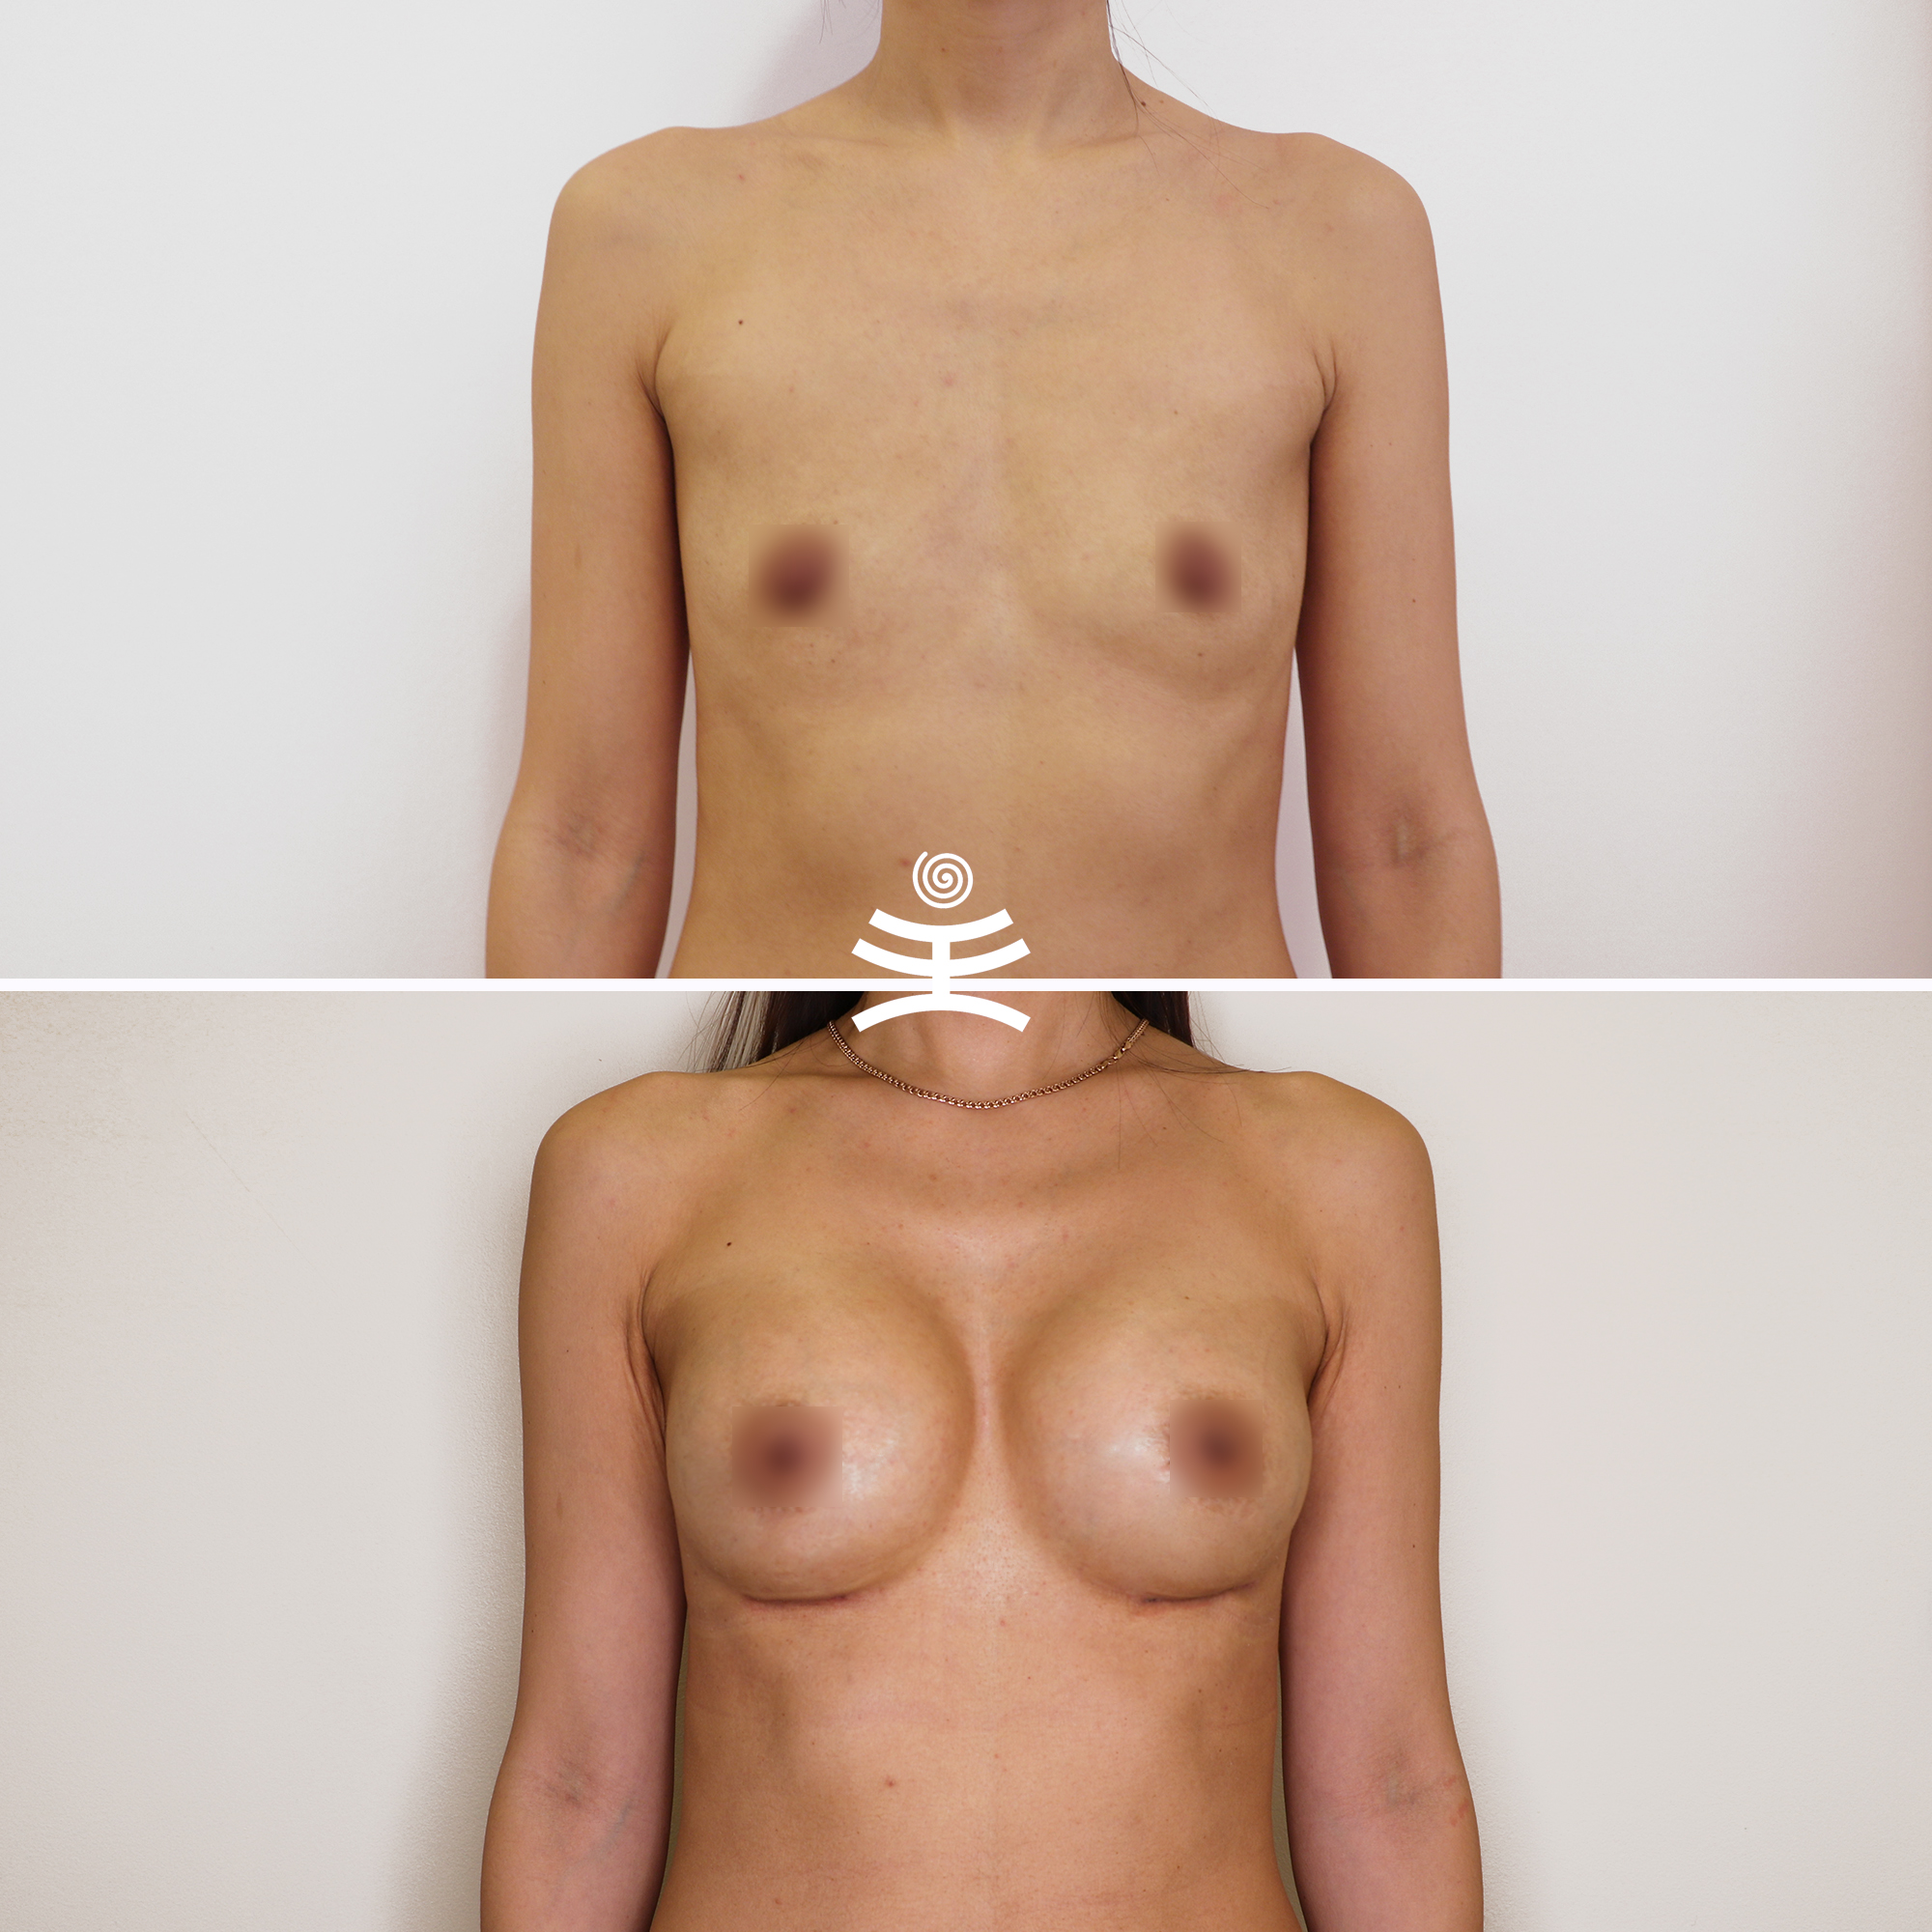 голая грудь после родов фото до и после фото 108